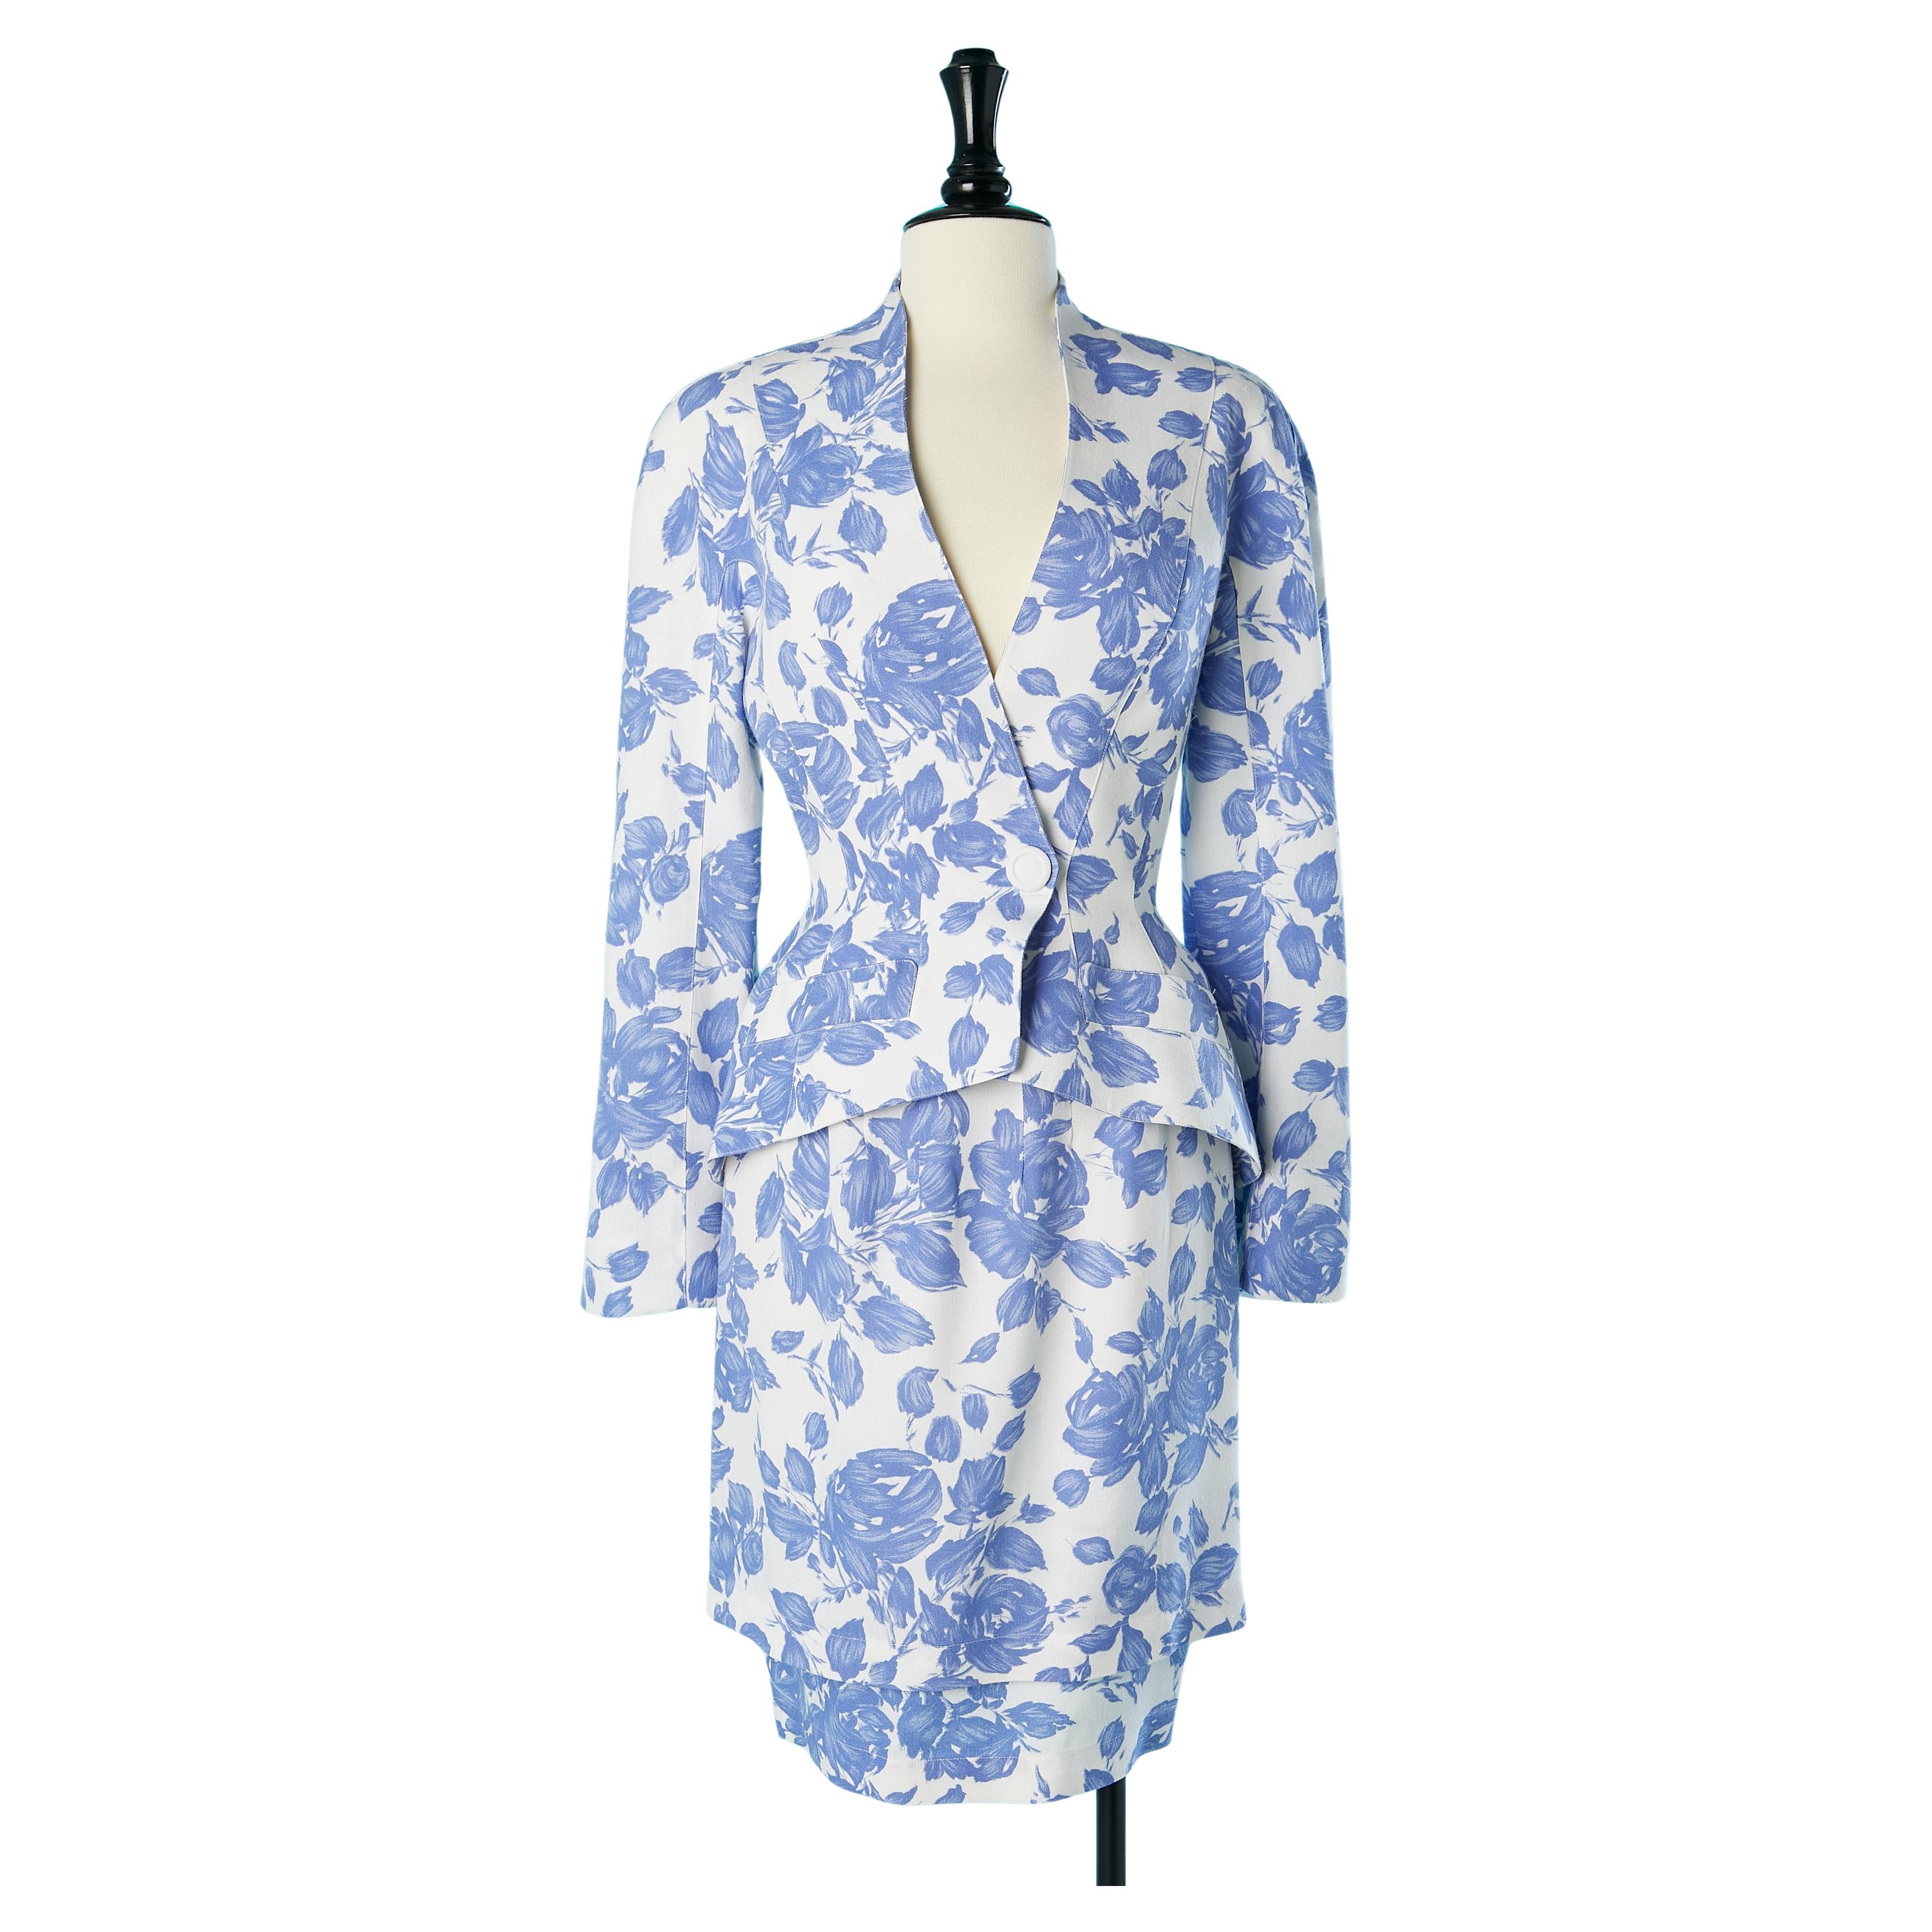 Combinaison jupe blanche avec imprimé floral bleu Thierry Mugler des années 1980 